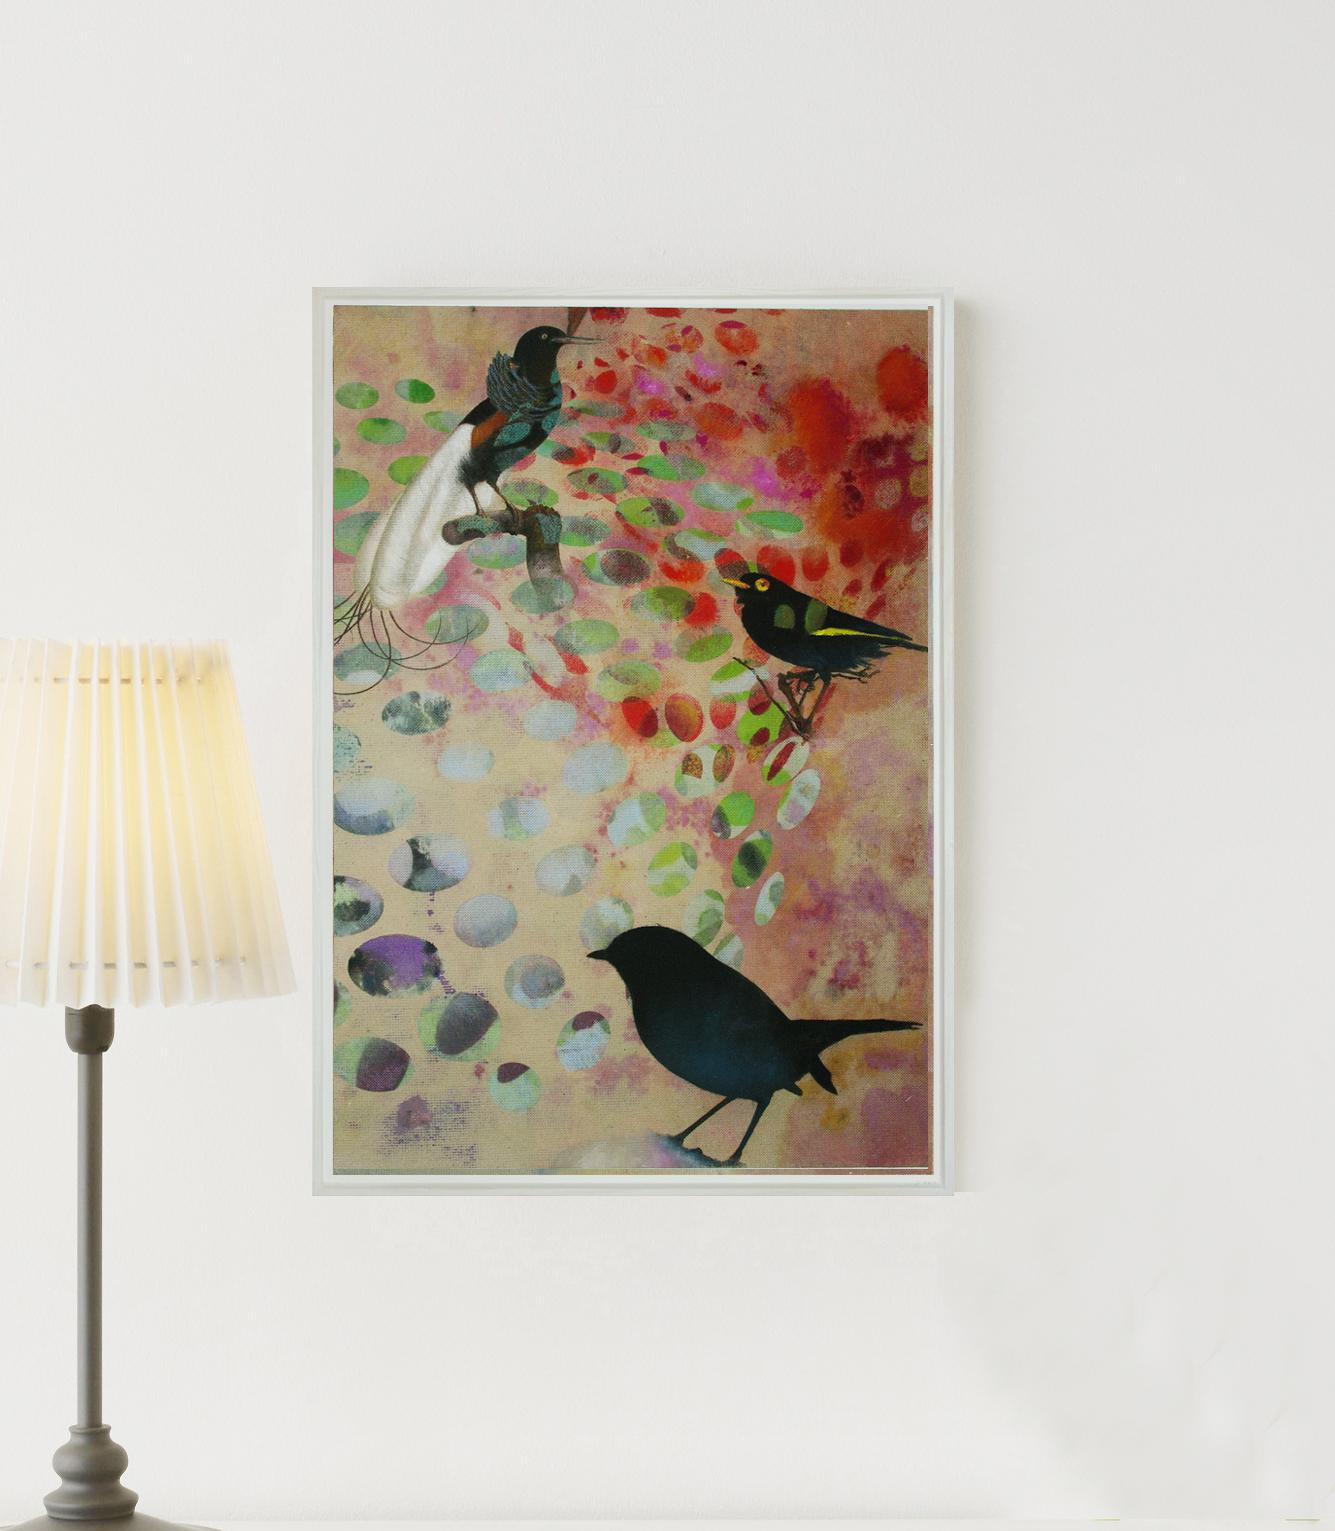 Vögel 018 – Zeitgenössisch, abstrakt, expressionistisch, modern, Straßenkunst, Surrealistisch – Painting von Francisco Nicolás